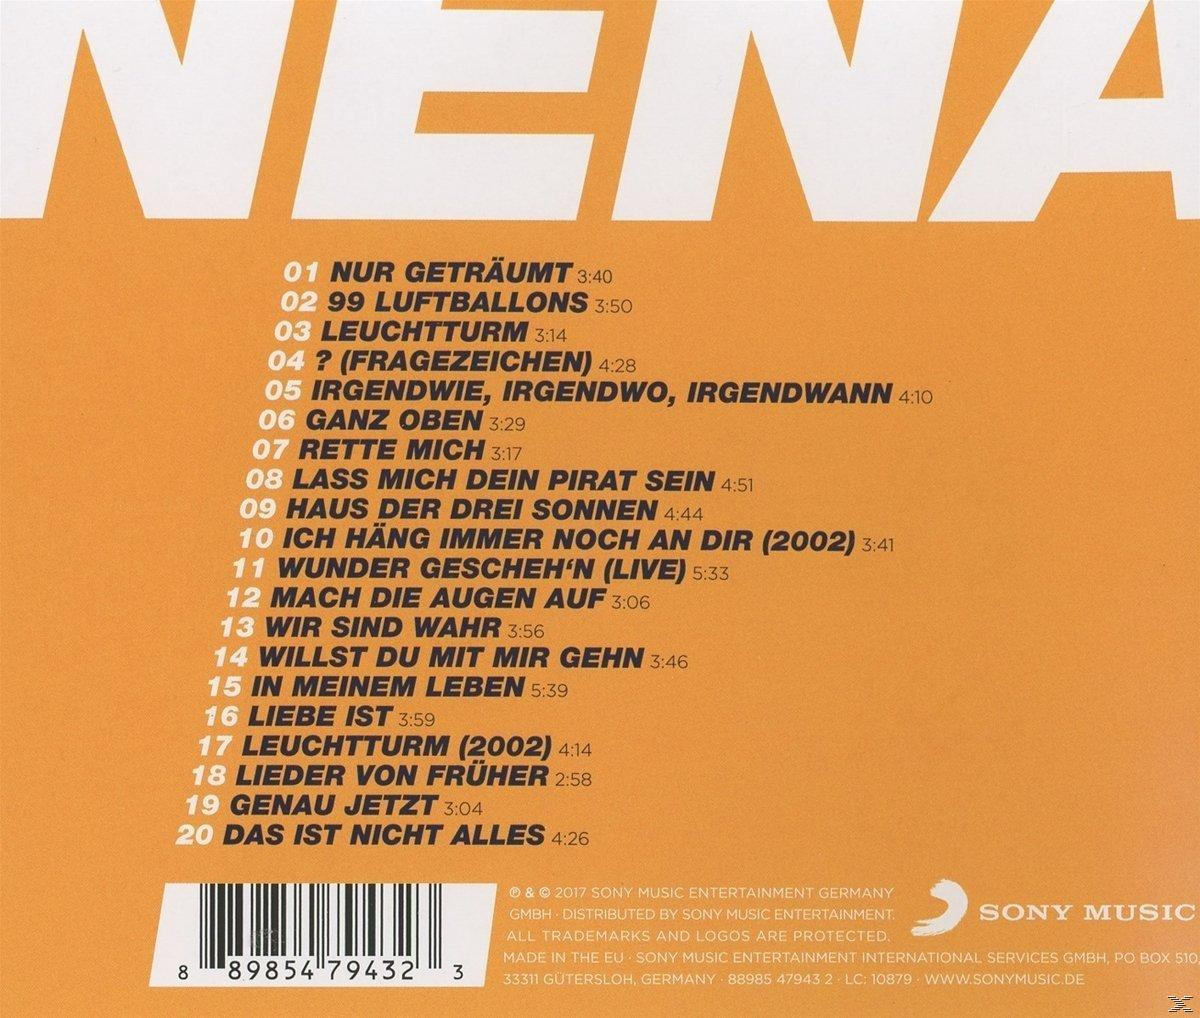 Nena - 40 (CD) Neue Of - Album Best - Das